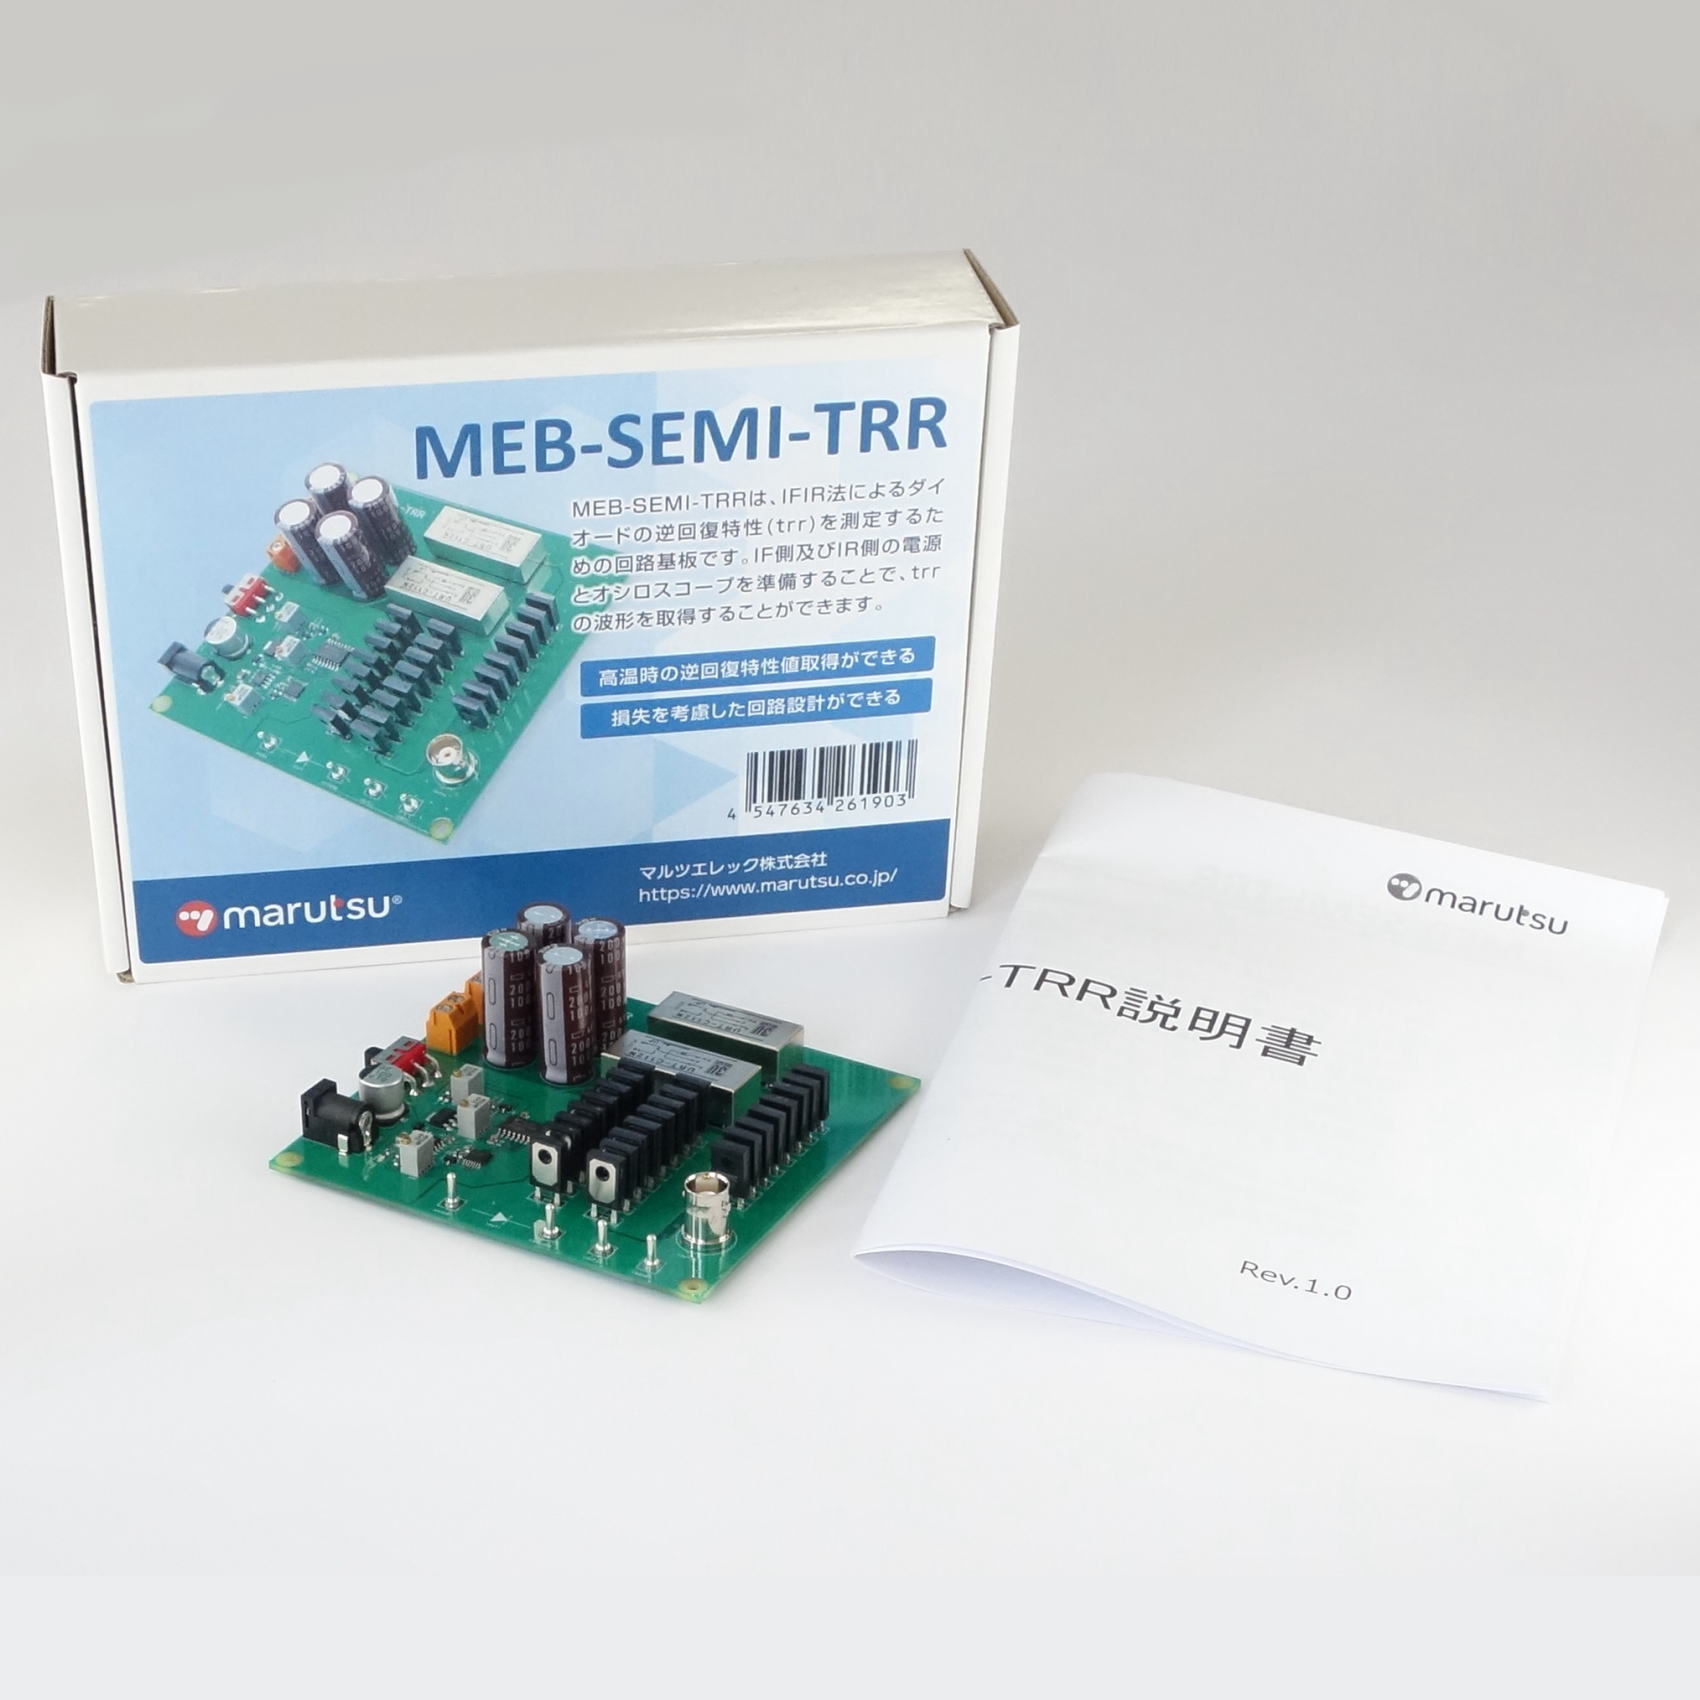 ダイオード逆回復特性測定回路基板【MEB-SEMI-TRR】